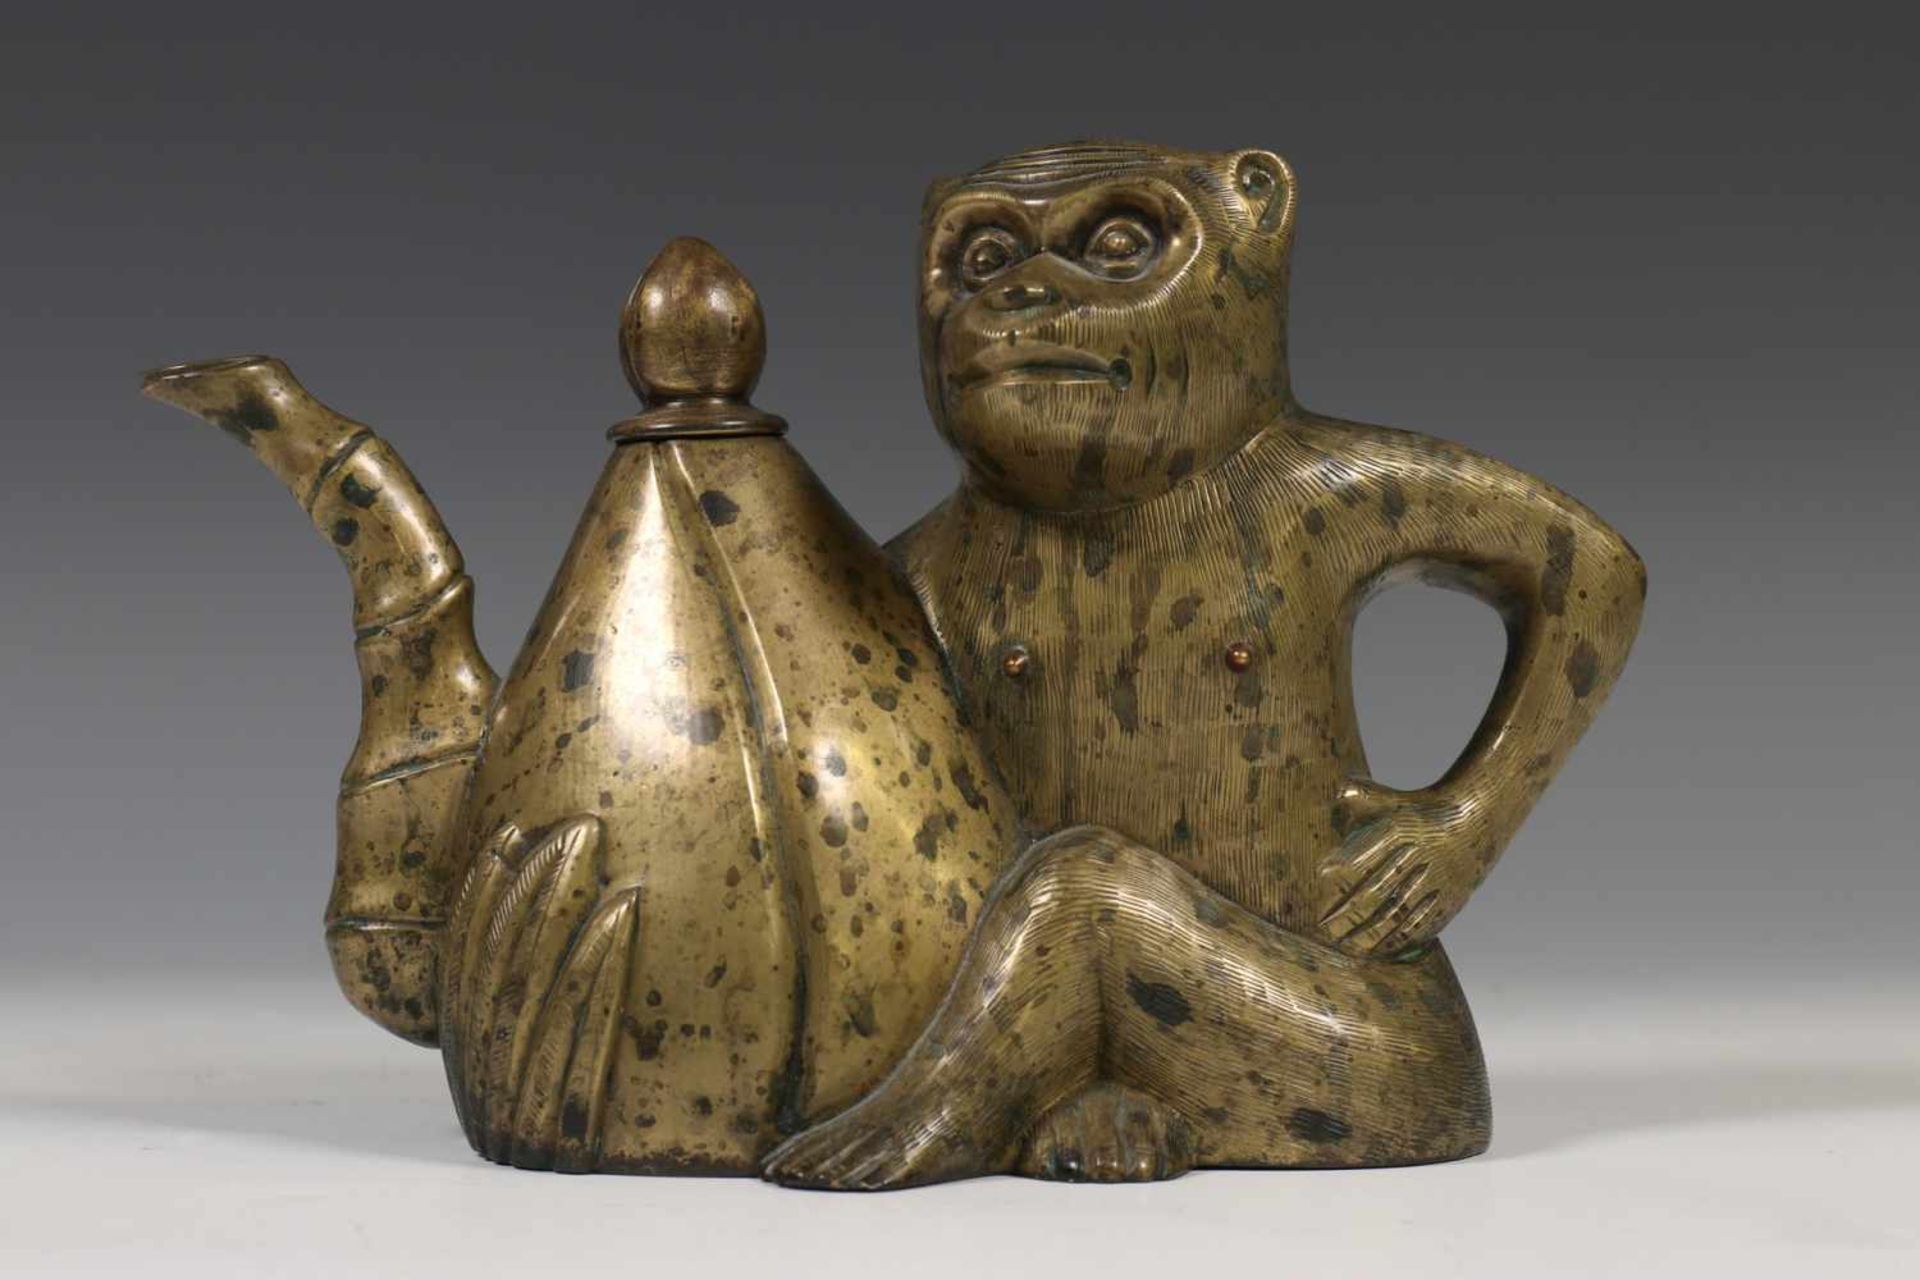 China, bronzen wijnkan in de vorm van een aap met perzik, 17e/18e eeuw,de aap zittend met zijn